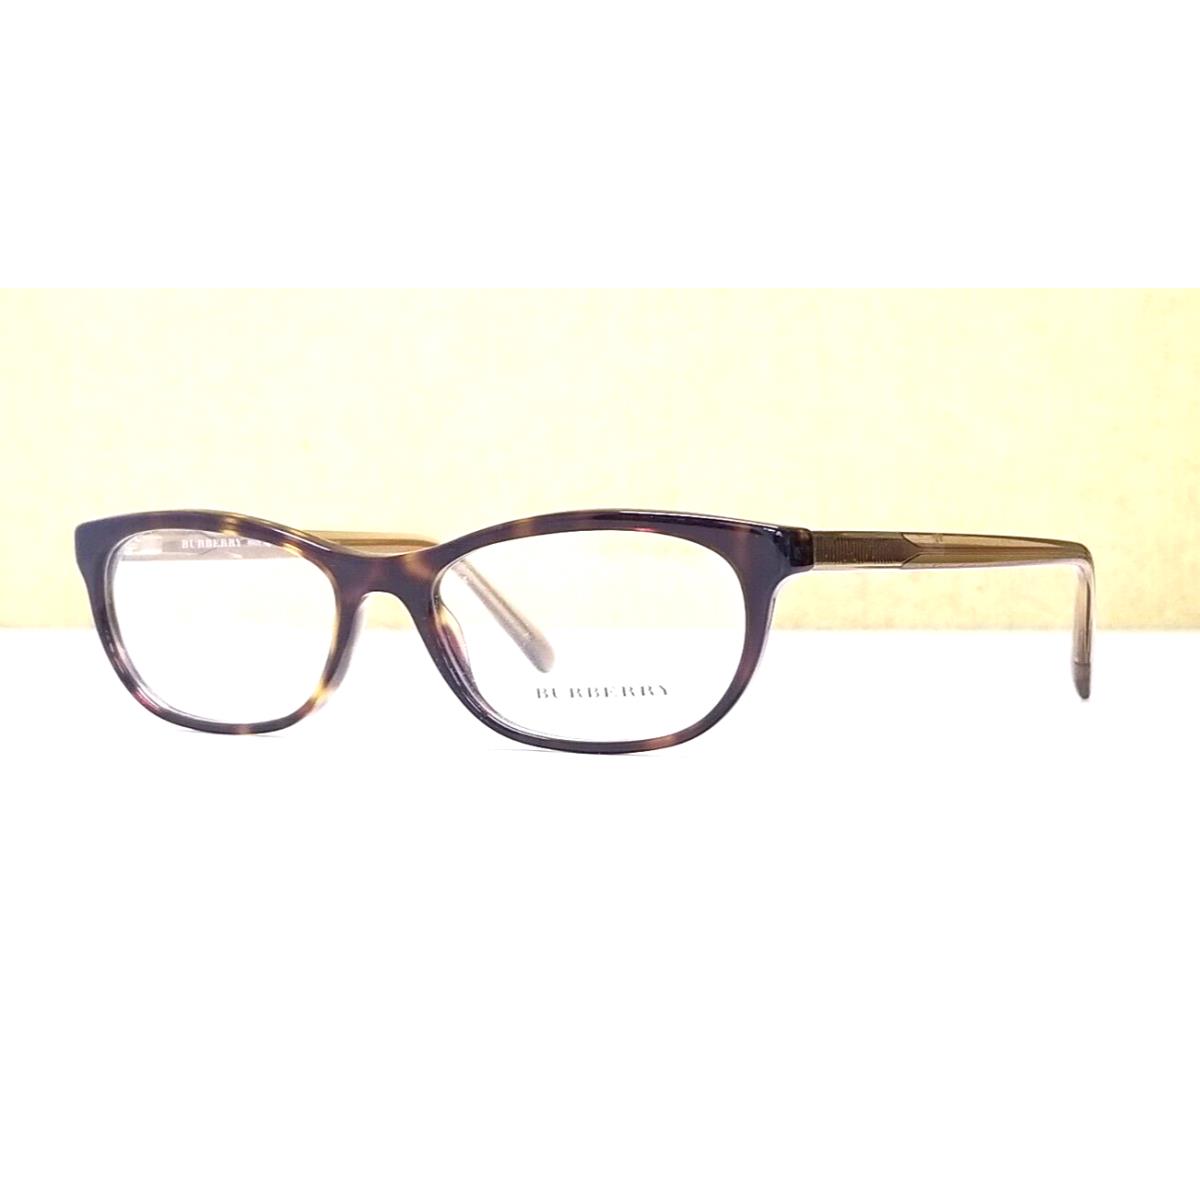 Burberry Adult Eyeglasses Frame B 2180 3506 Full Rim Plastic 52-16-140 Italy